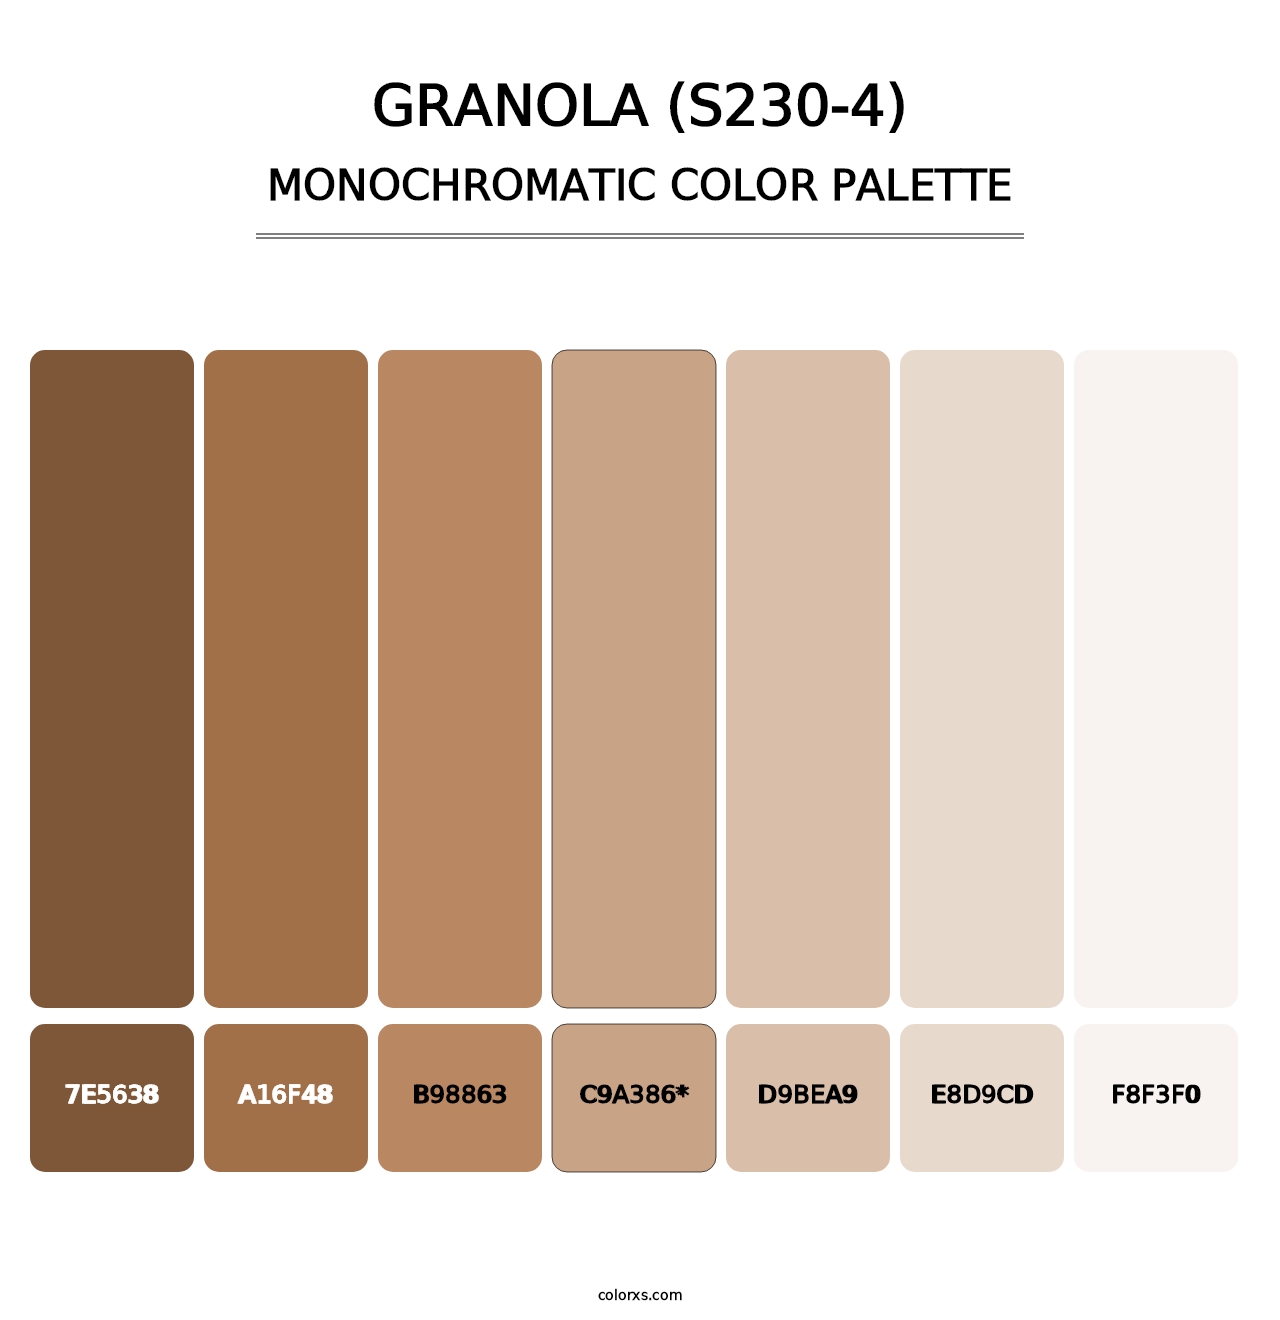 Granola (S230-4) - Monochromatic Color Palette